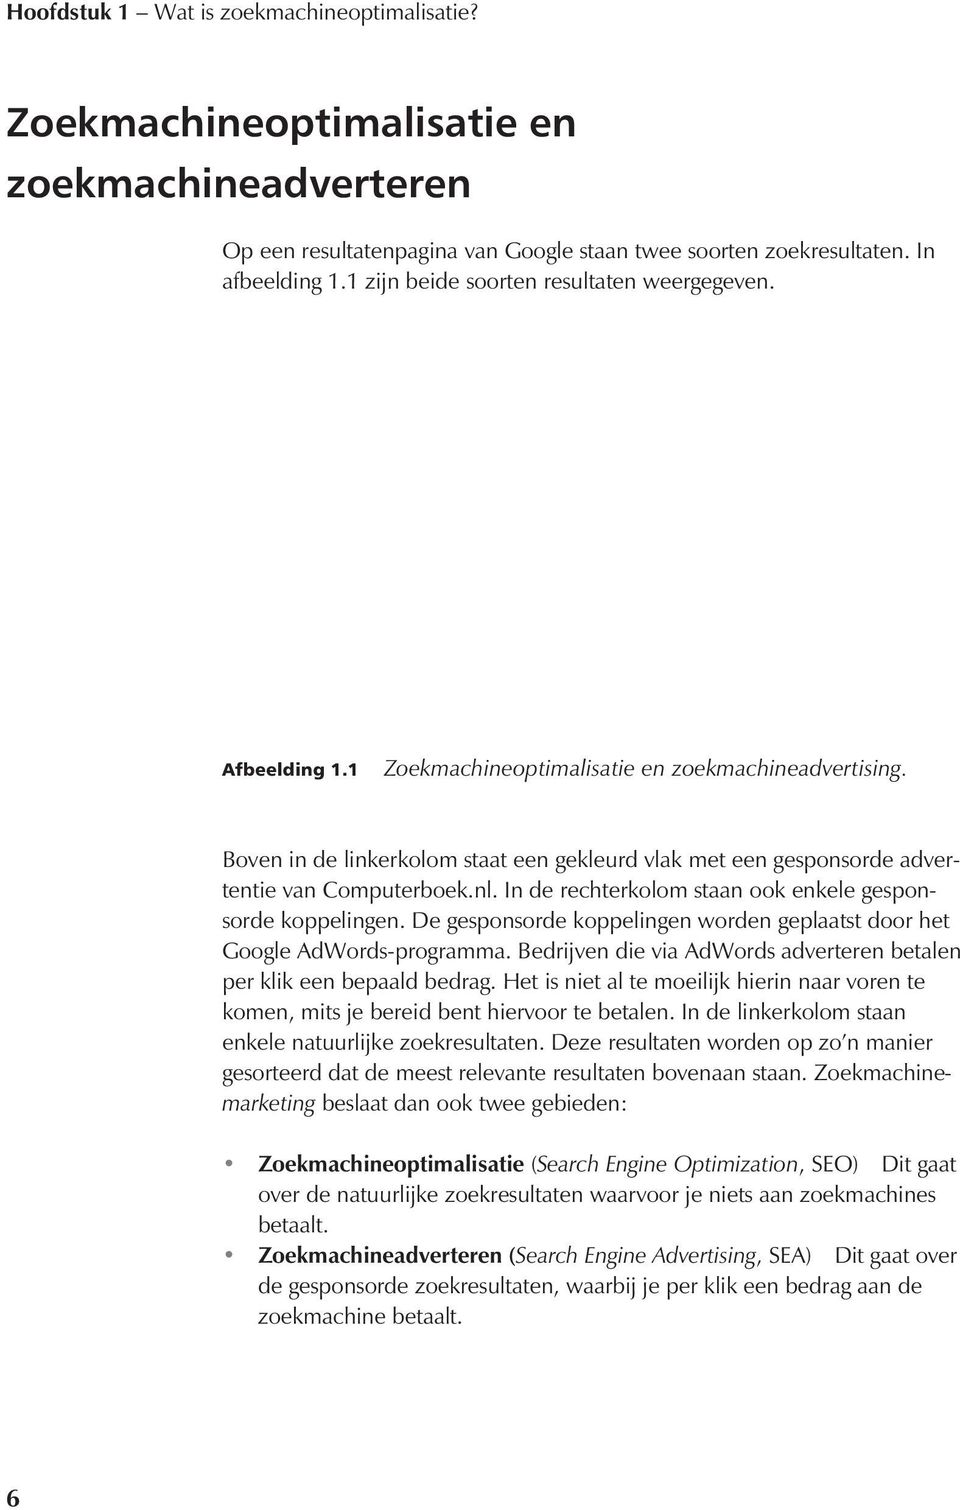 Boven in de linkerkolom staat een gekleurd vlak met een gesponsorde advertentie van Computerboek.nl. In de rechterkolom staan ook enkele gesponsorde koppelingen.